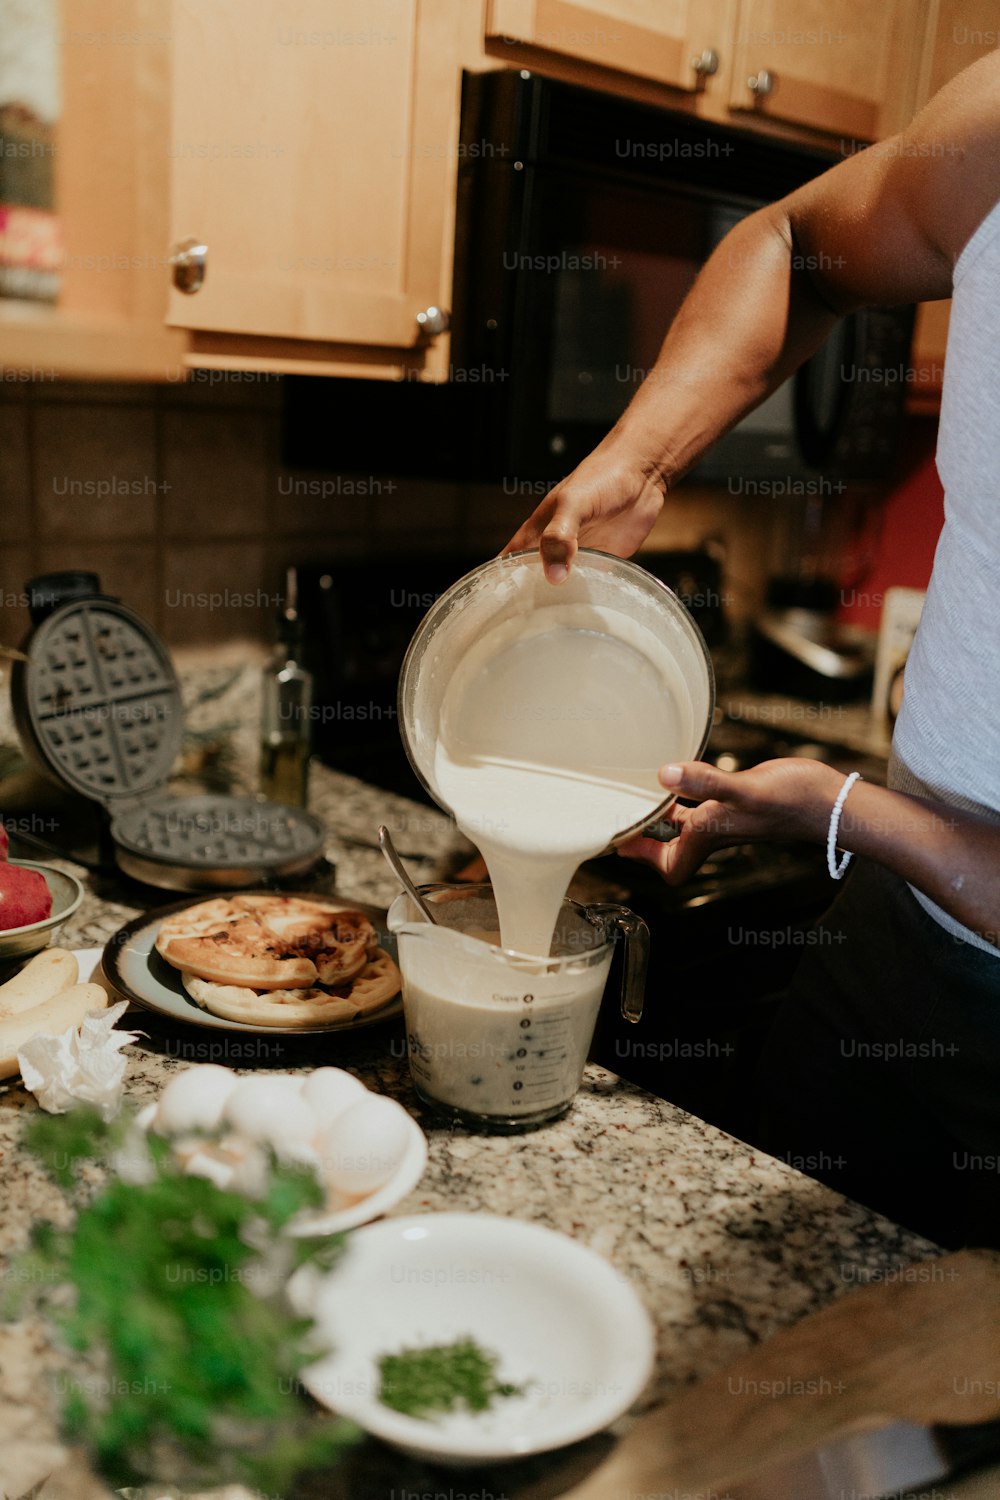 Una mujer vierte leche en un tazón en el mostrador de una cocina